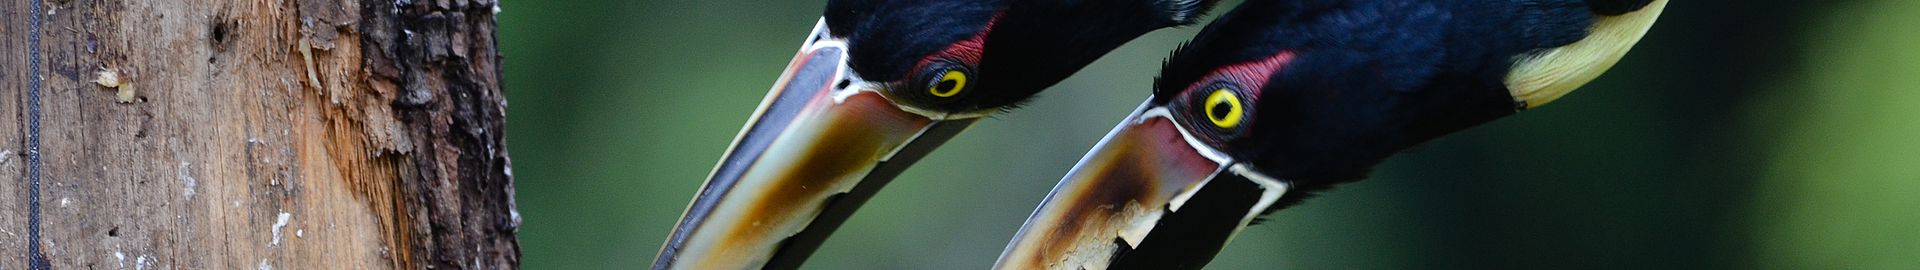 Vögel auf Nahrungssuche